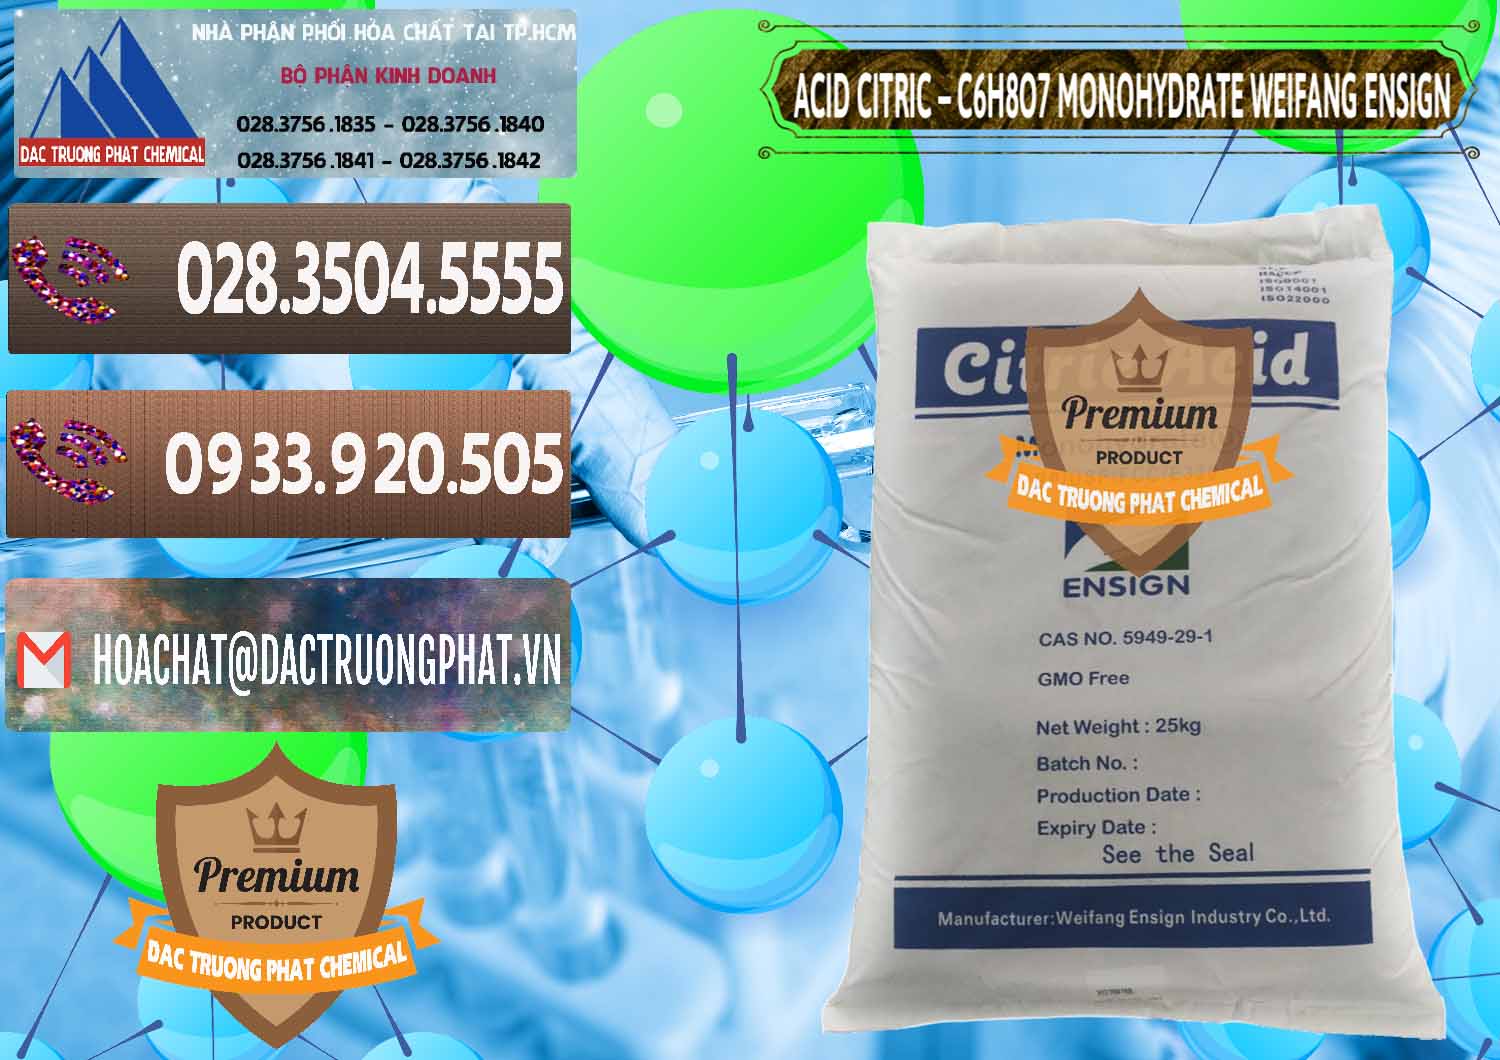 Nhà phân phối & bán Acid Citric - Axit Citric Monohydrate Weifang Trung Quốc China - 0009 - Bán & phân phối hóa chất tại TP.HCM - hoachatviet.net